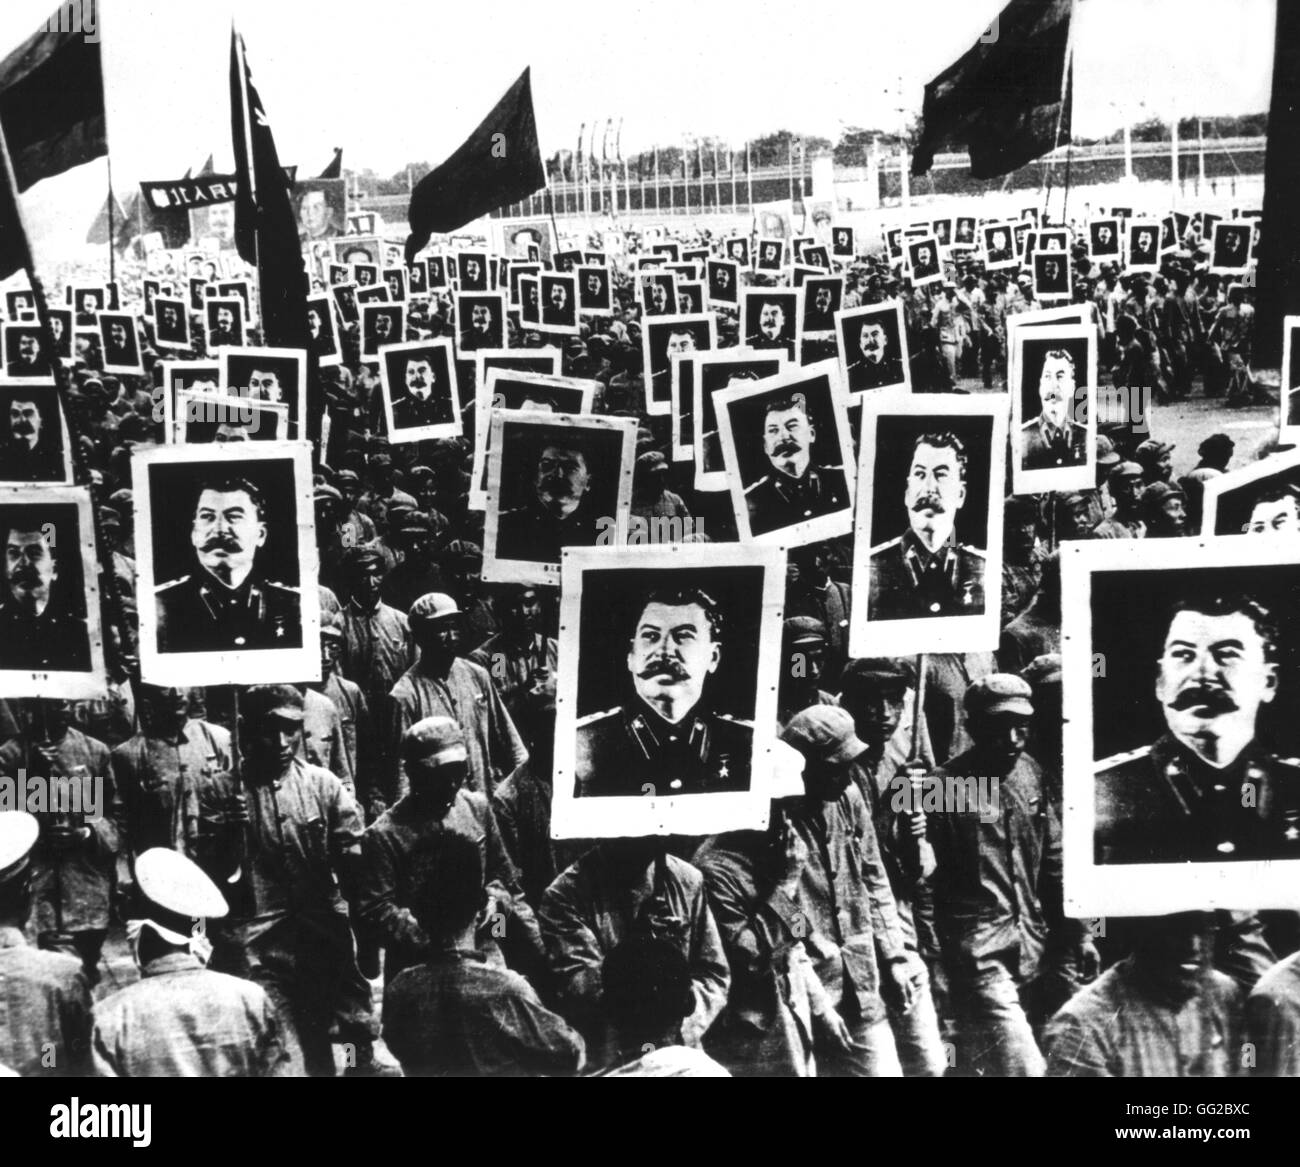 La dimostrazione che celebra Stalin 1950 China National Archives - Washington Foto Stock